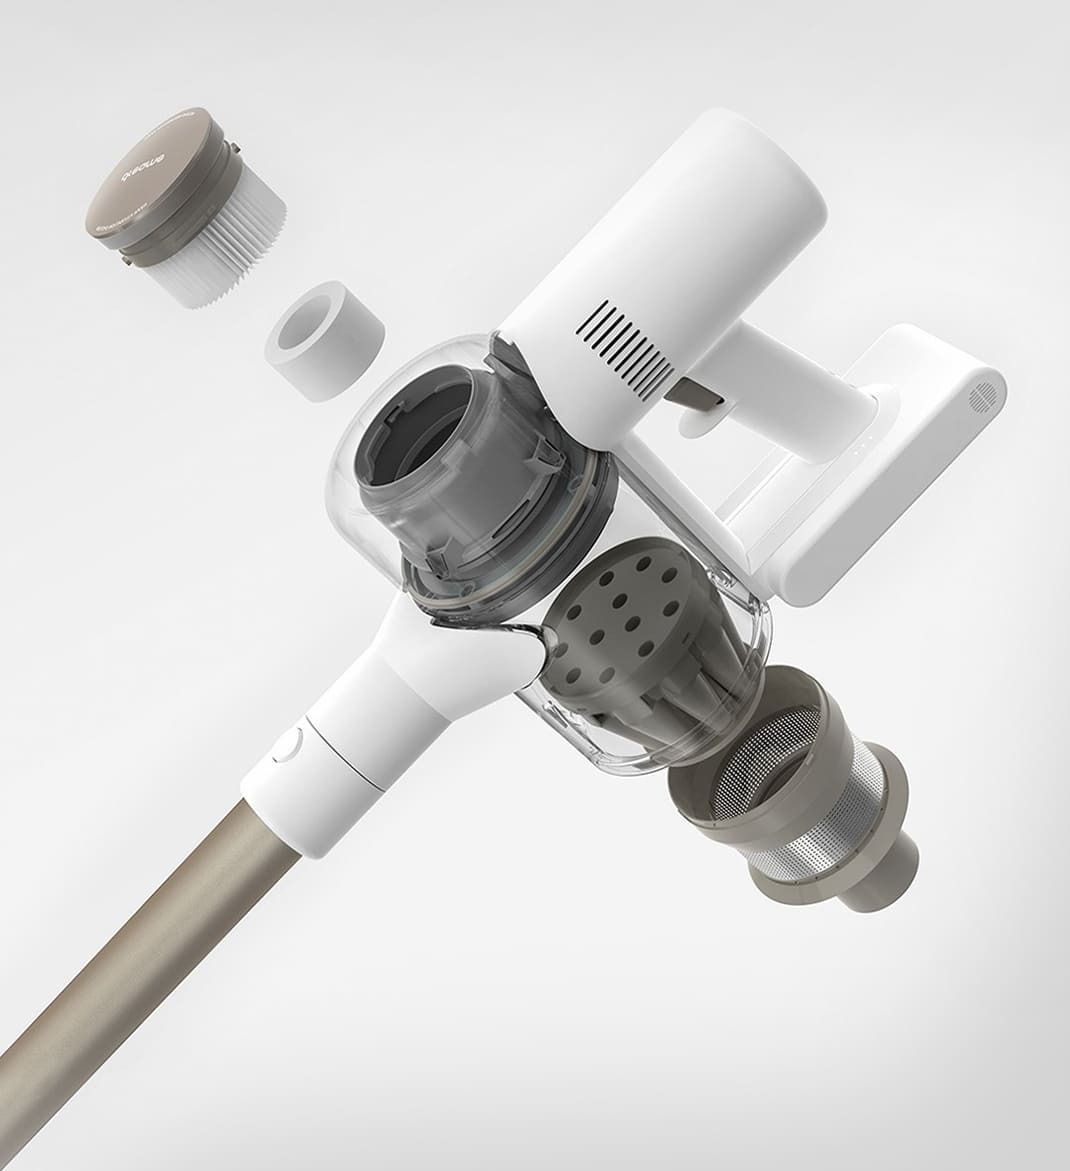 Беспроводной ручной пылесос Xiaomi Dreame V10 Boreas Vacuum Cleaner (White/Белый)